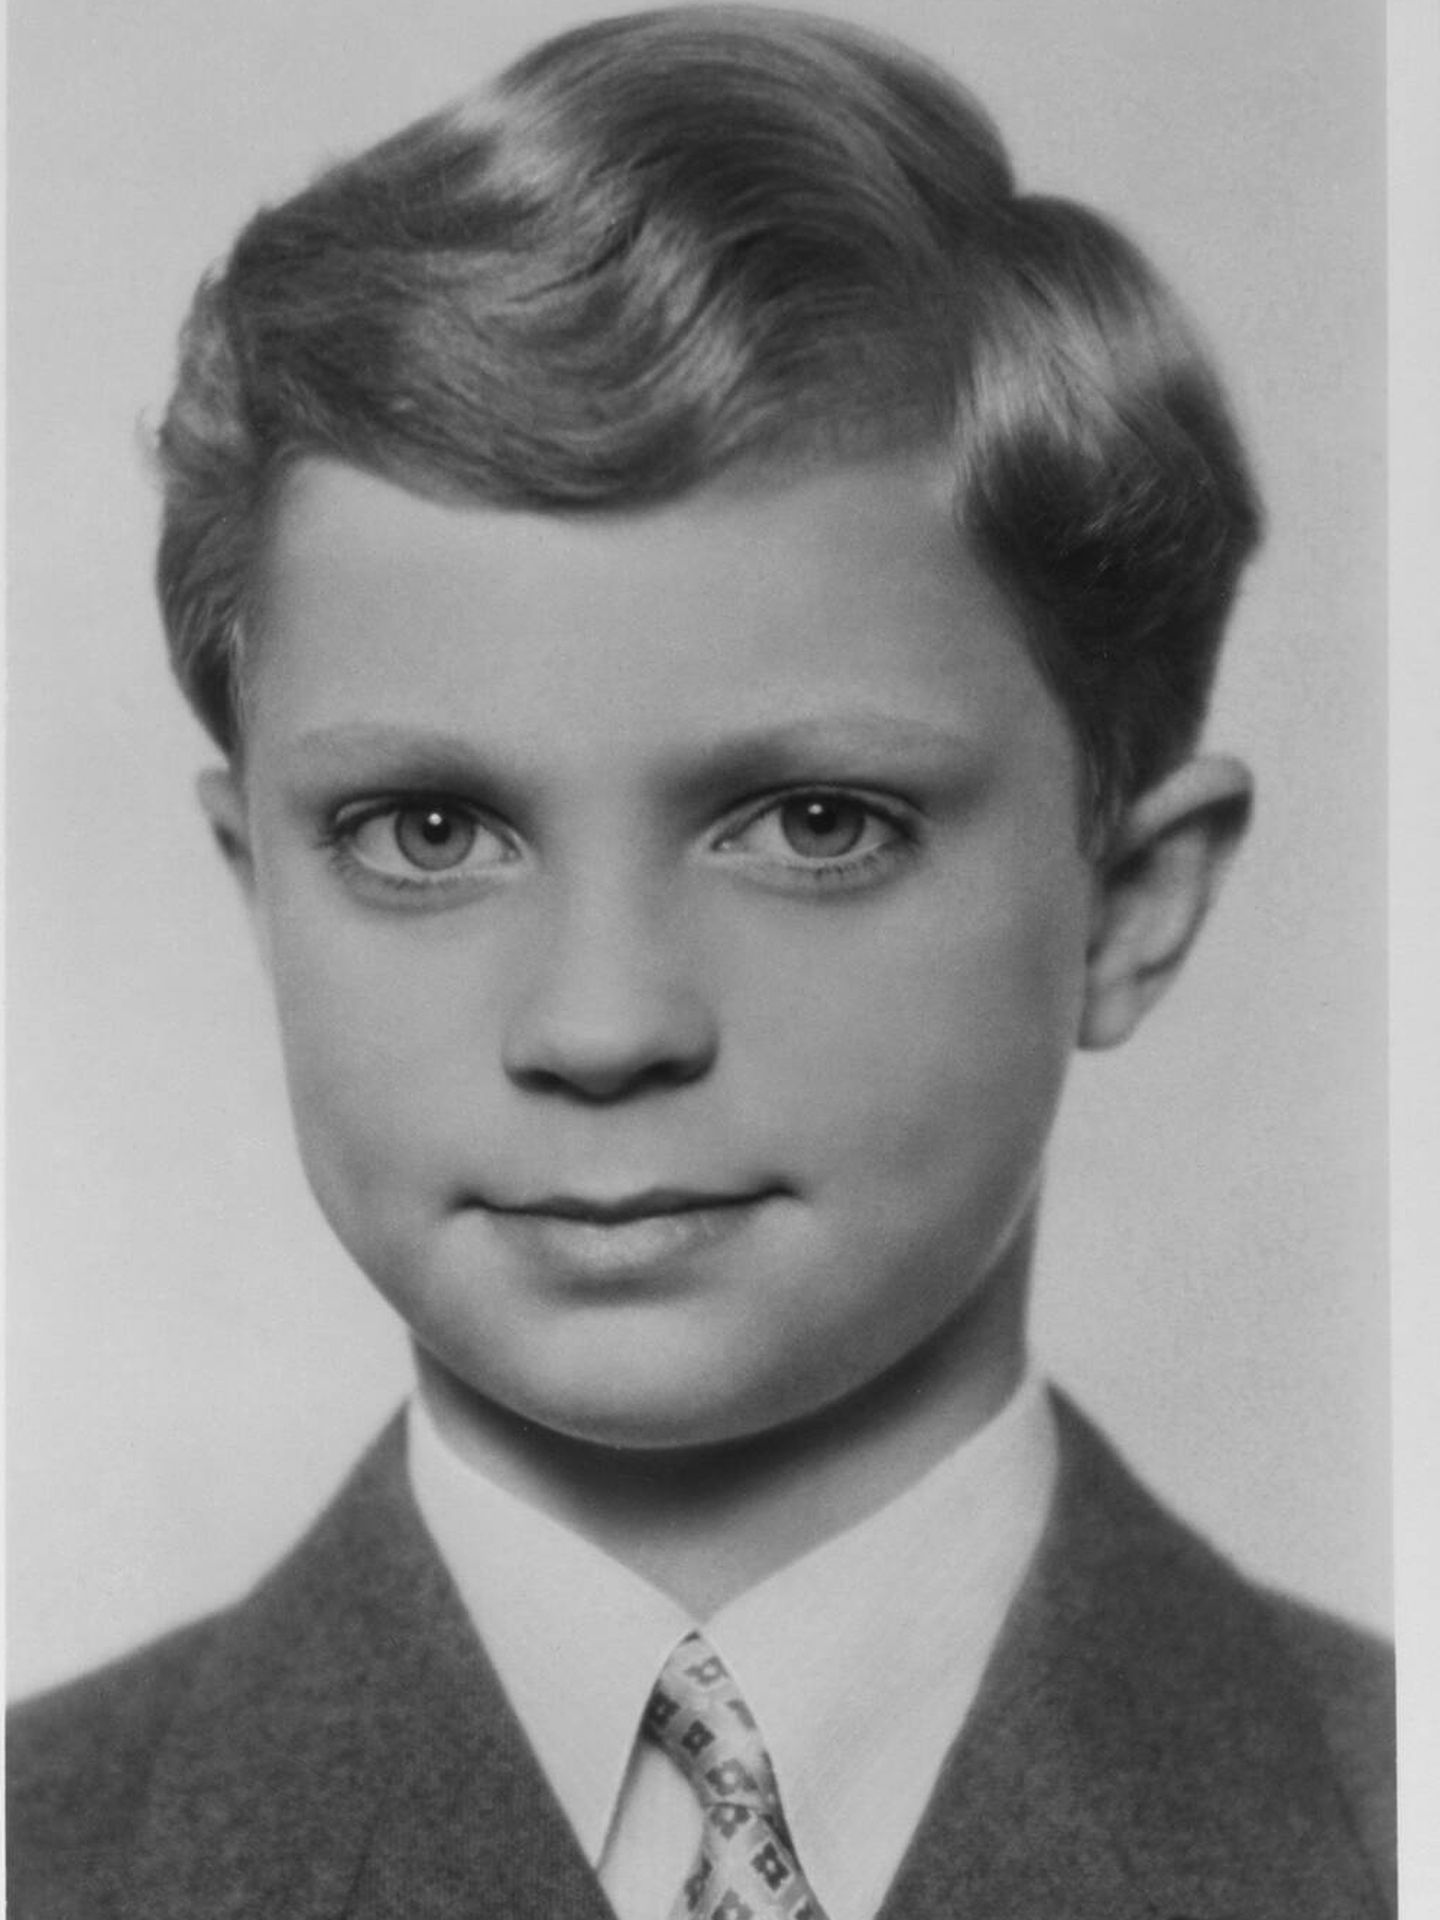 Su abuelo, el rey Carlos Gustavo, en 1956 a los 10 años. (Kungahuset)